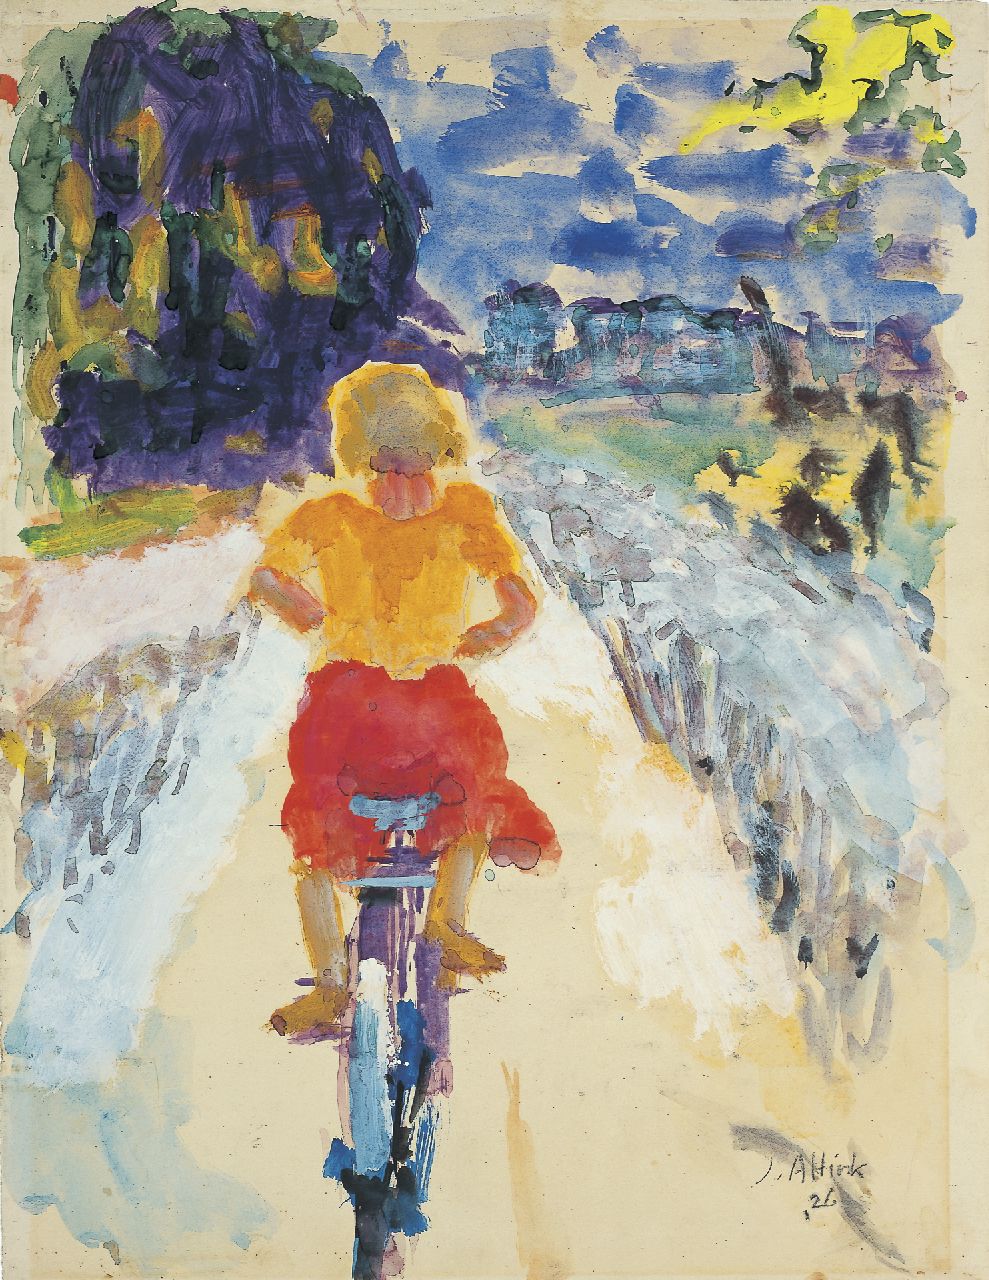 Altink J.  | Jan Altink, Meisje op de fiets, aquarel op papier 63,0 x 47,0 cm, gesigneerd rechtsonder en gedateerd '26